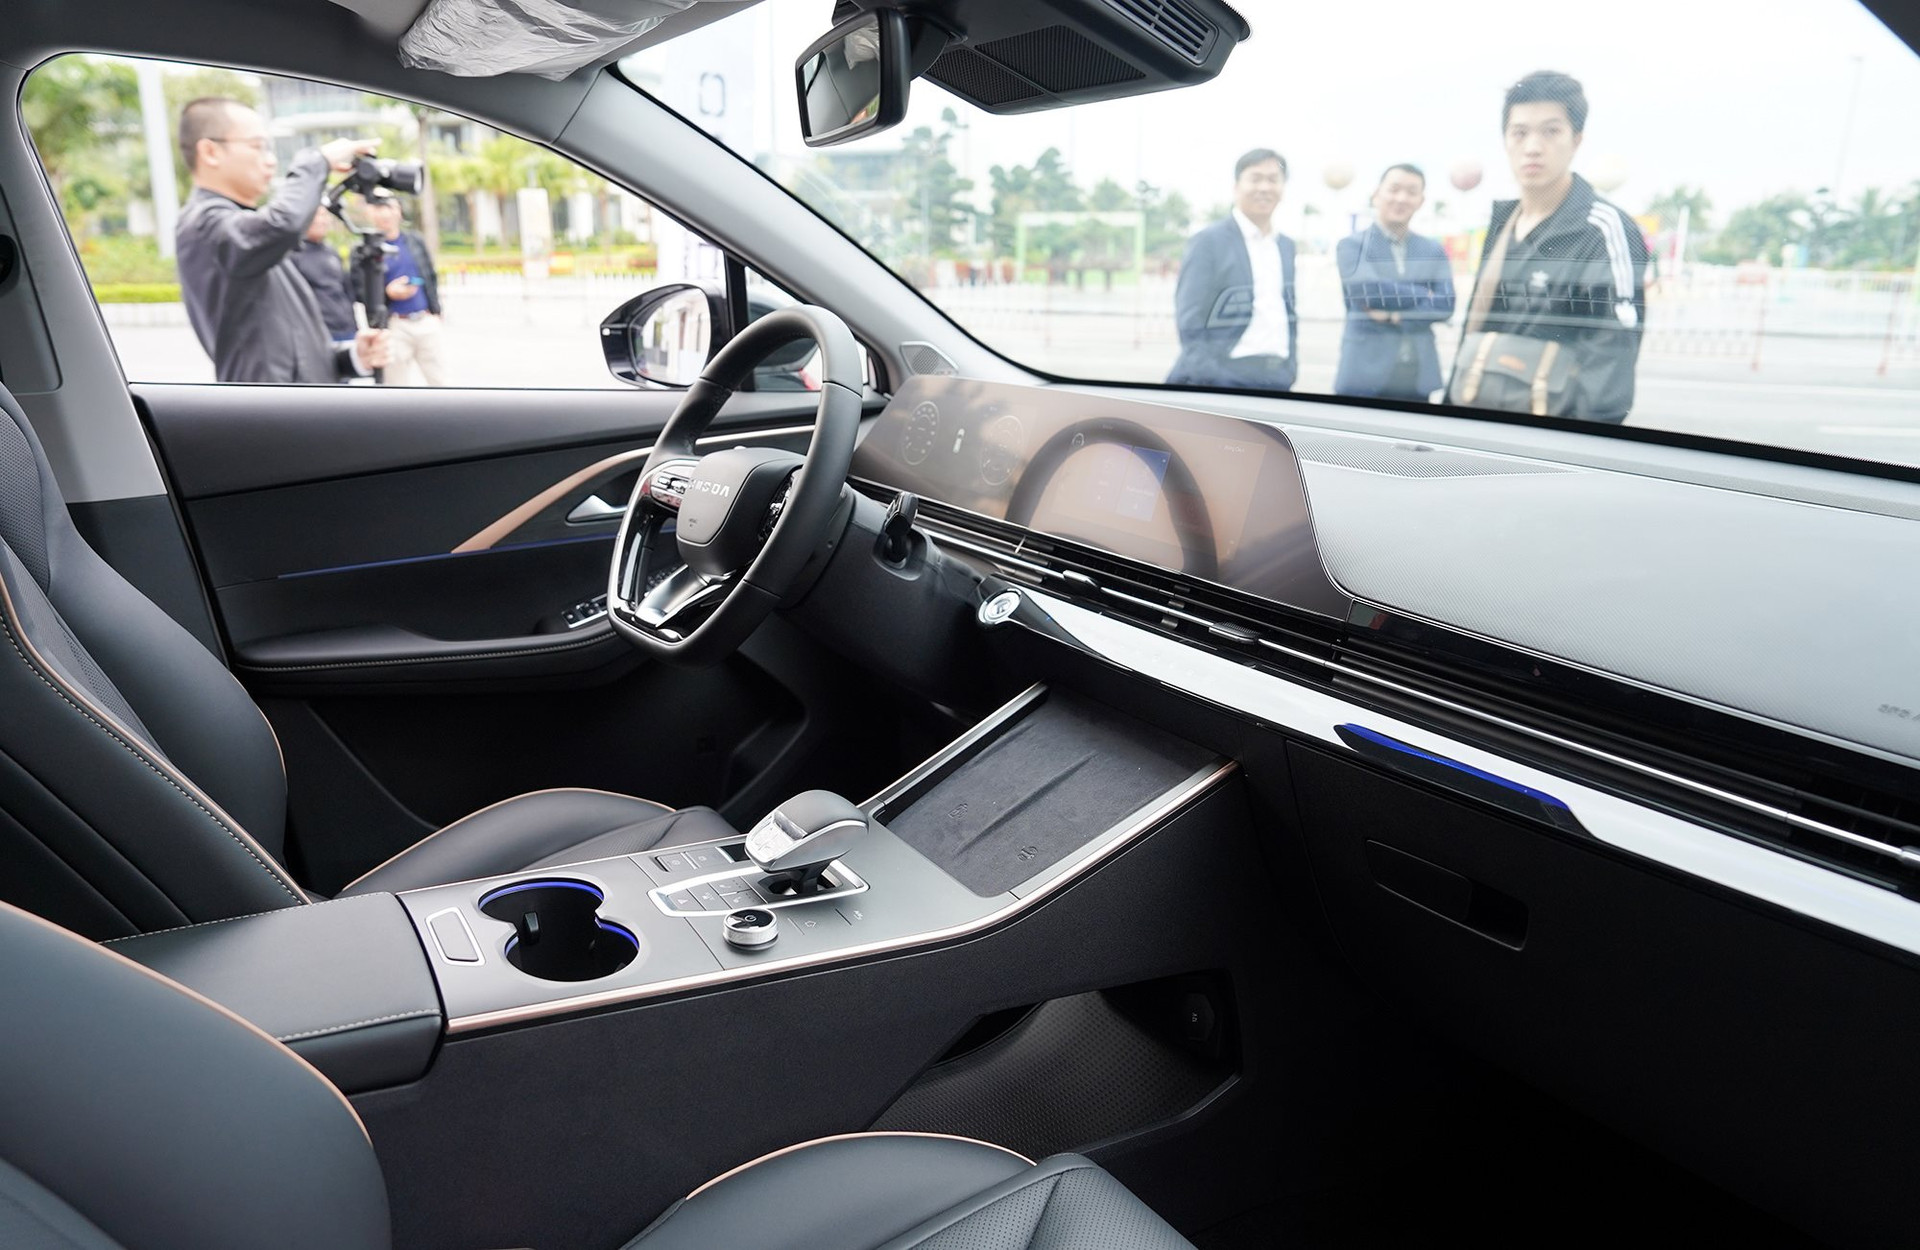 Tương tự nhóm sản phẩm phổ thông, các mẫu xe cao cấp của Trung Quốc sẽ vẫn dựa vào thế mạnh về giá bán, thiết kế chiều thị hiếu và tính năng công nghệ mới.